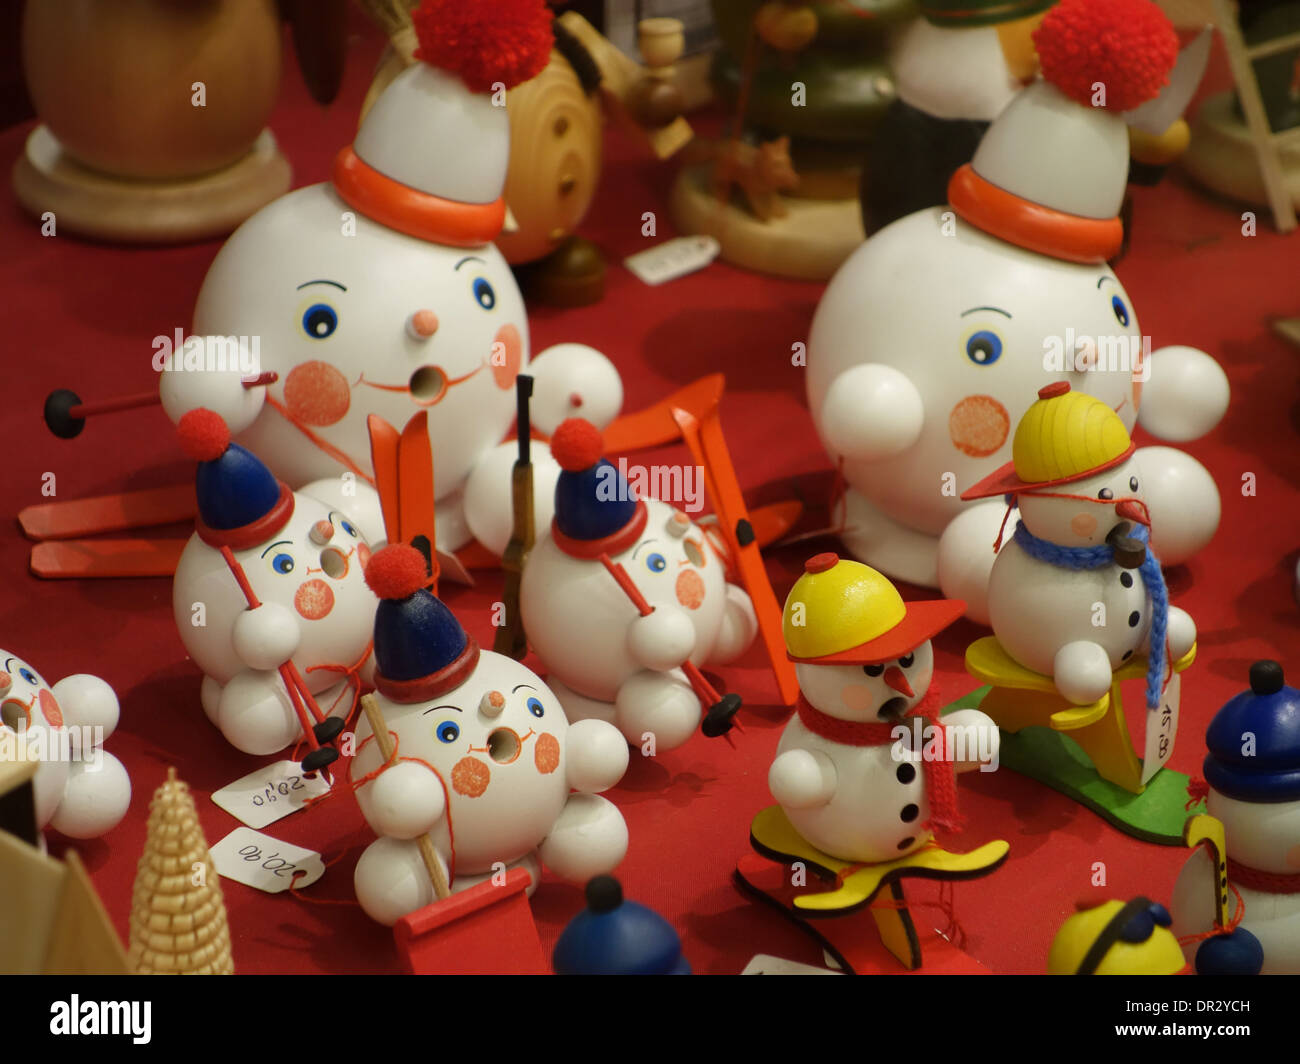 Berlin, Allemagne - 21 décembre 2013 : Les bonshommes de figurines dans un stand au marché de Noël à Alexanderplatz, Berlin. Banque D'Images